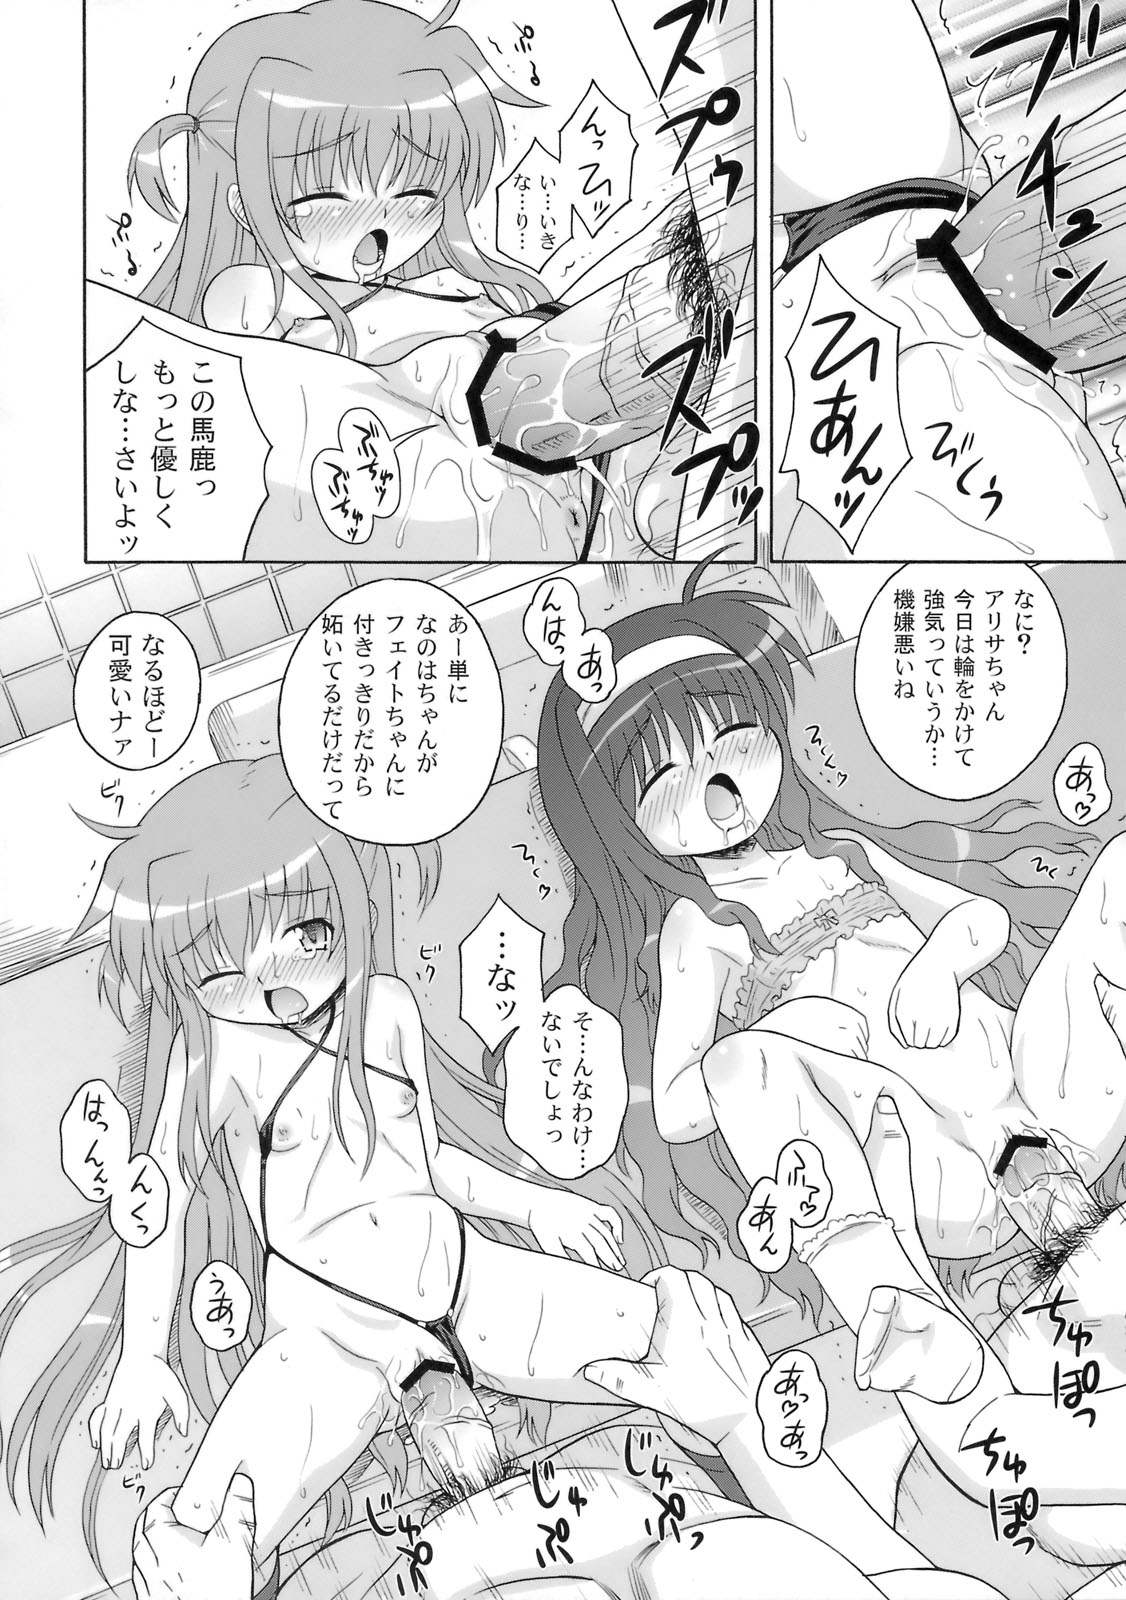 (SC41) [Taikan Kyohougumi (Azusa Norihee)] Kissa Midoriya ni Youkoso - Welcome to Coffeeshop MIDORIYA (Mahou Shoujo Lyrical Nanoha) page 13 full